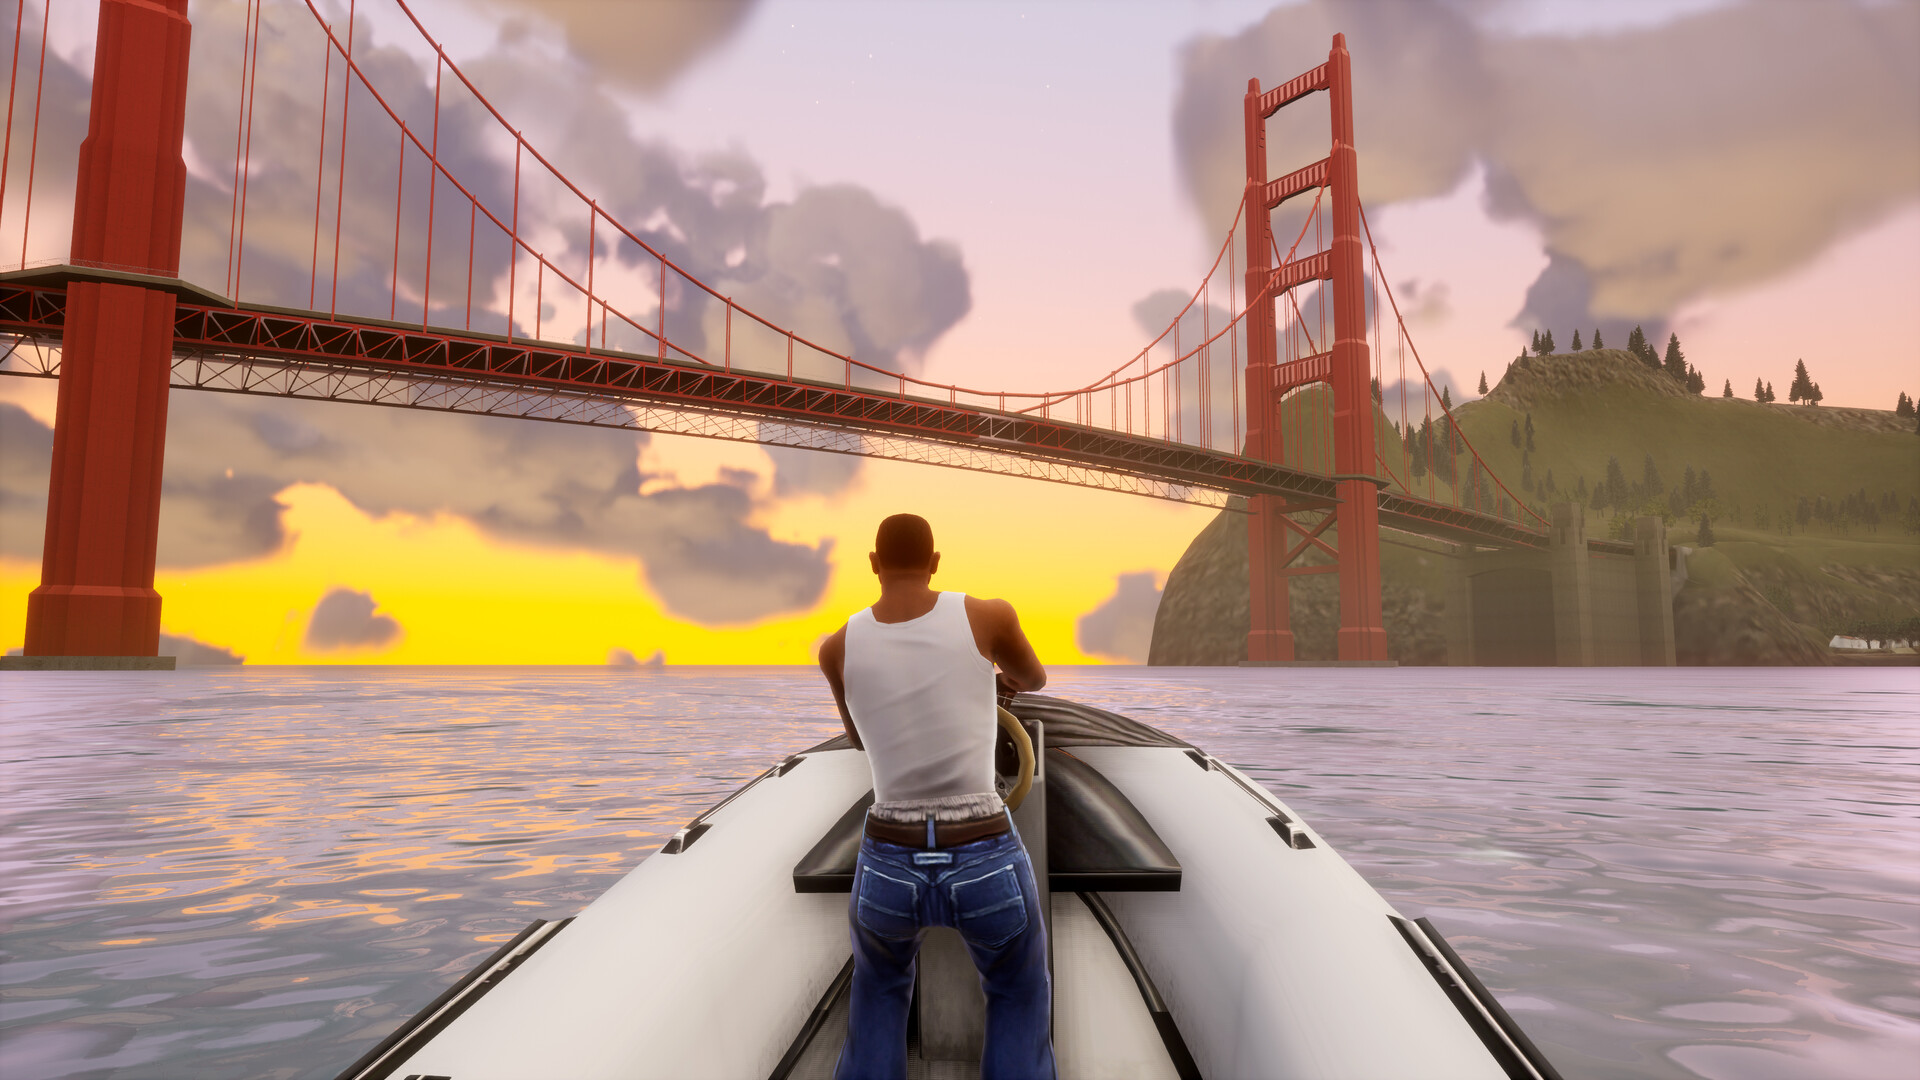 GTA: San Andreas - The Definitive Edition – Suporte ao jogo